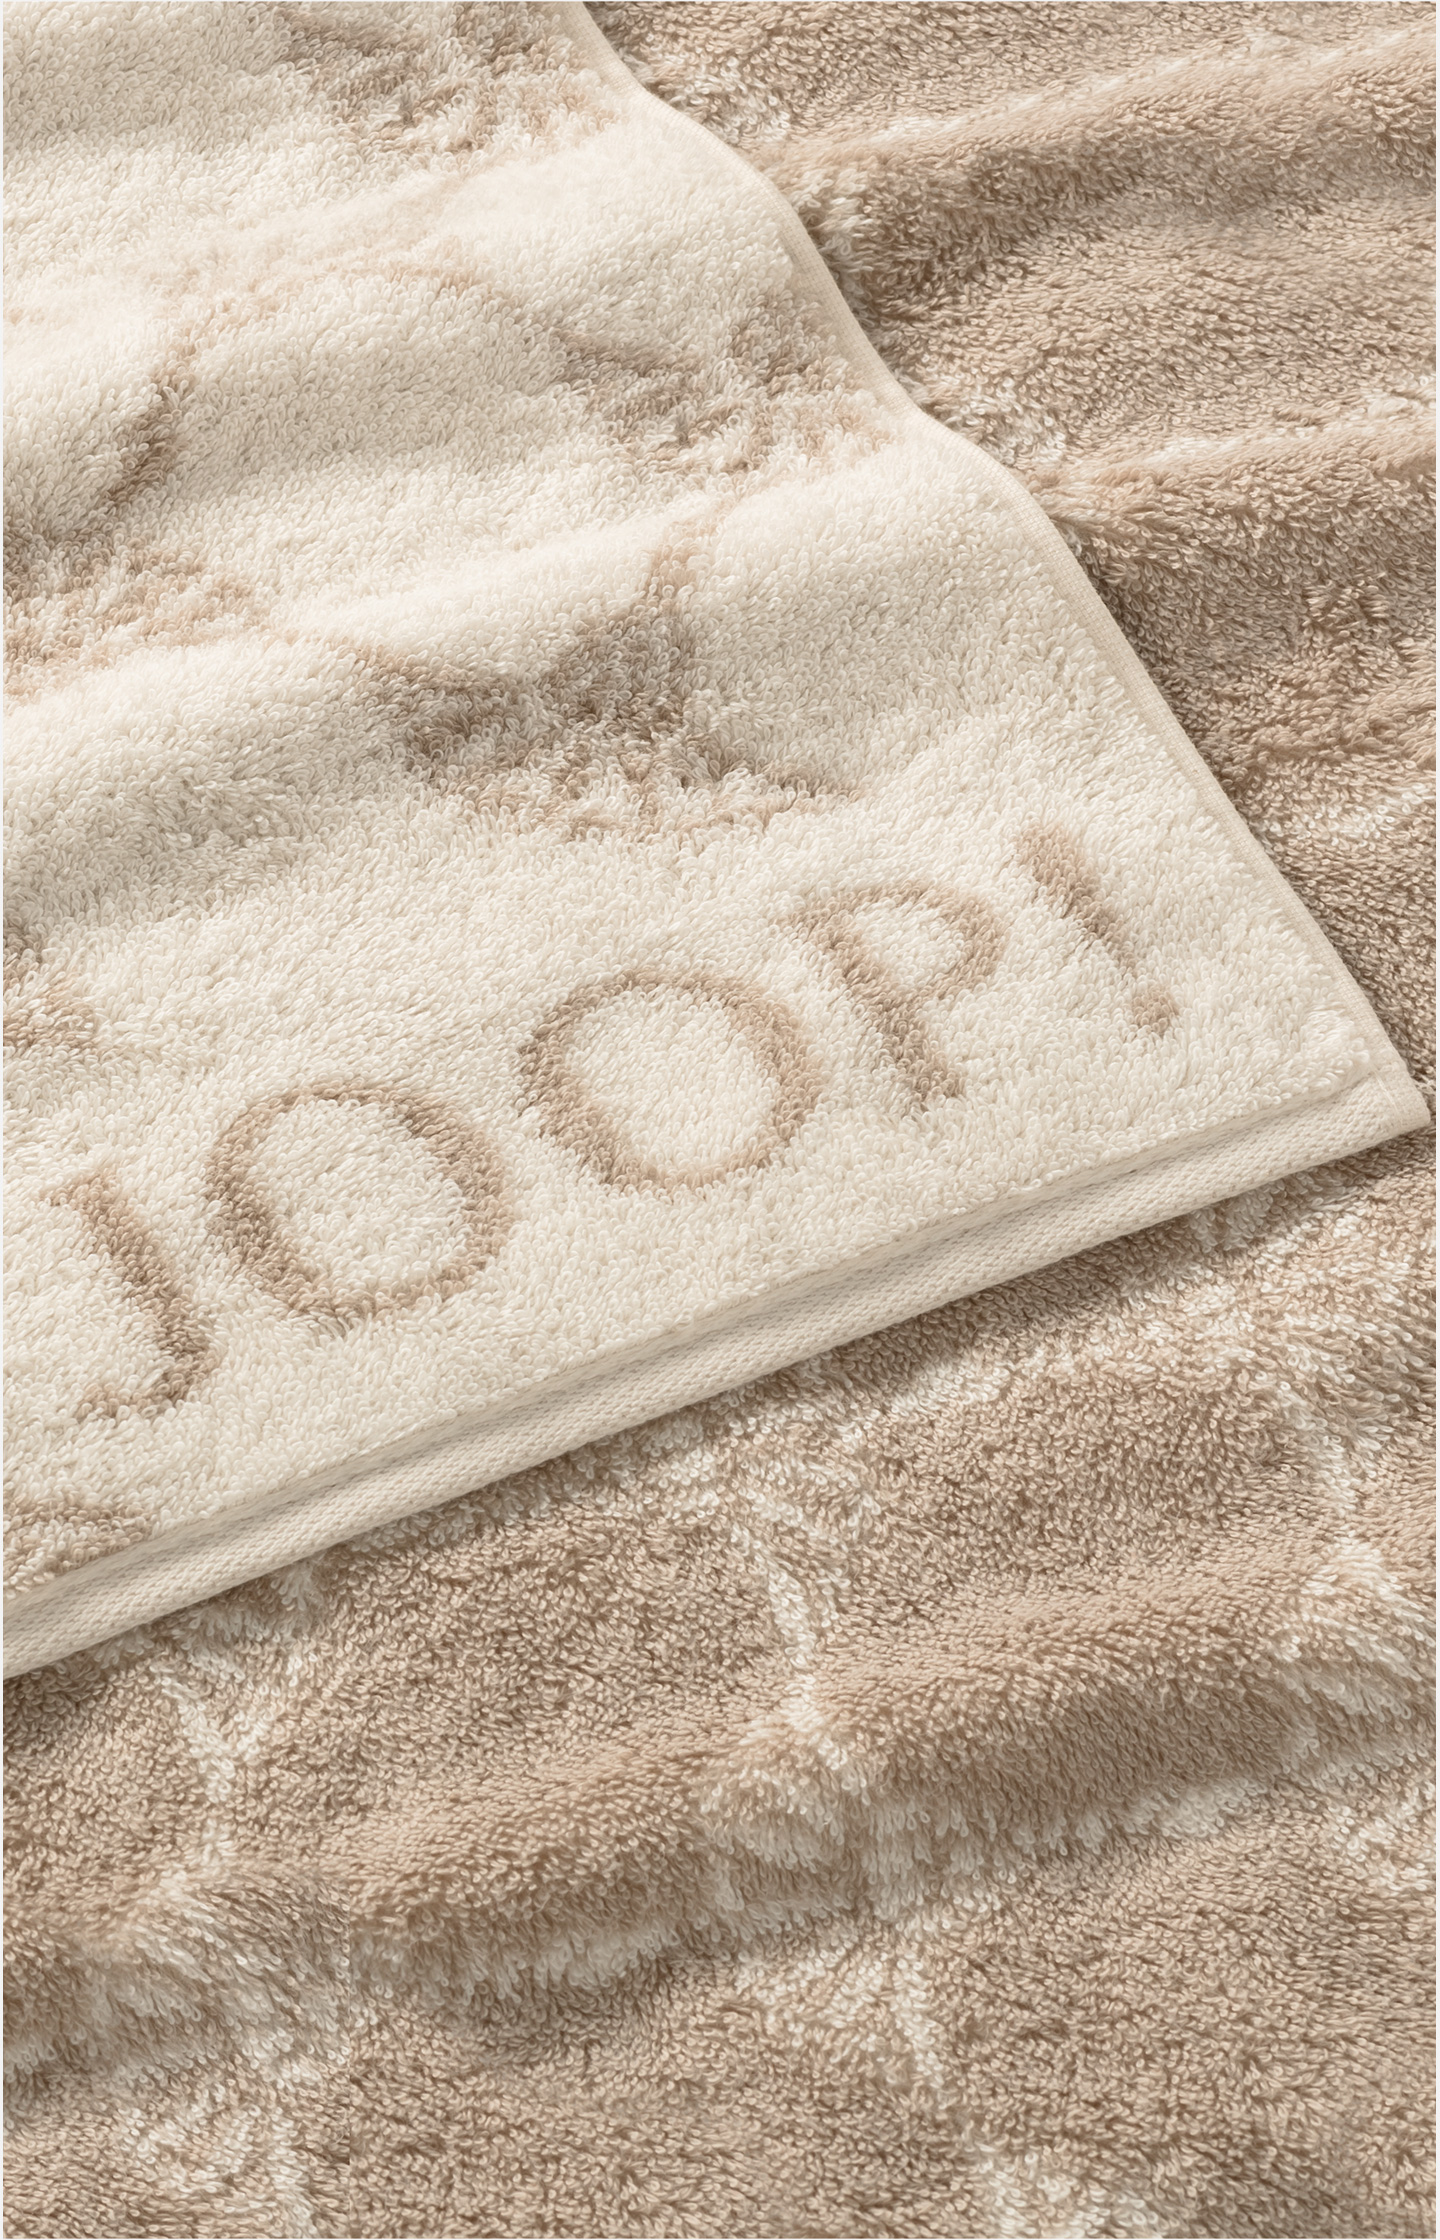 JOOP! CLASSIC CORNFLOWER Towel Cream in the Shop in - JOOP! Online